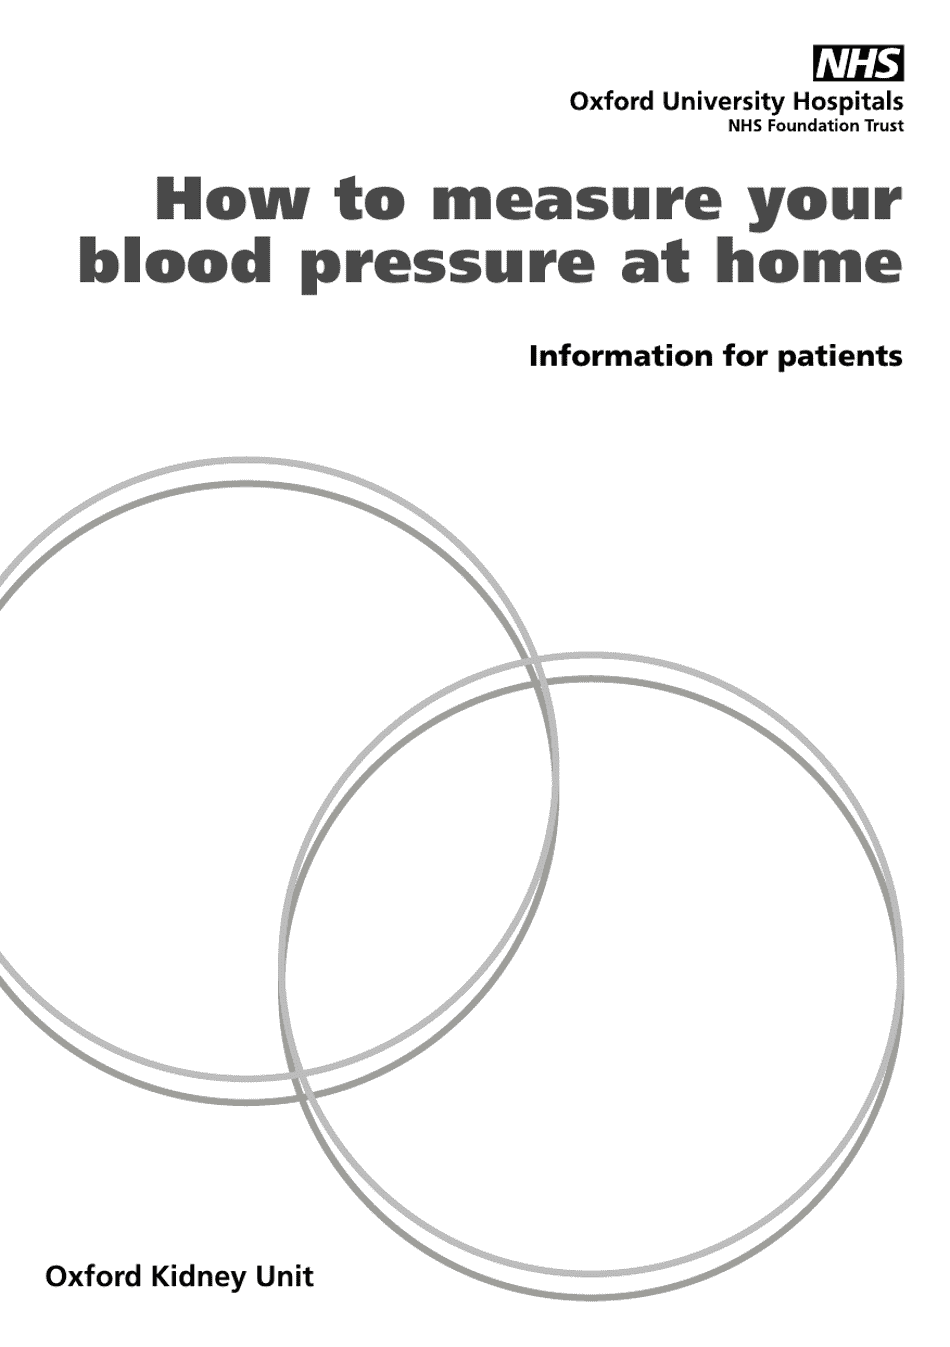 Weekly Home Blood Pressure Log Template